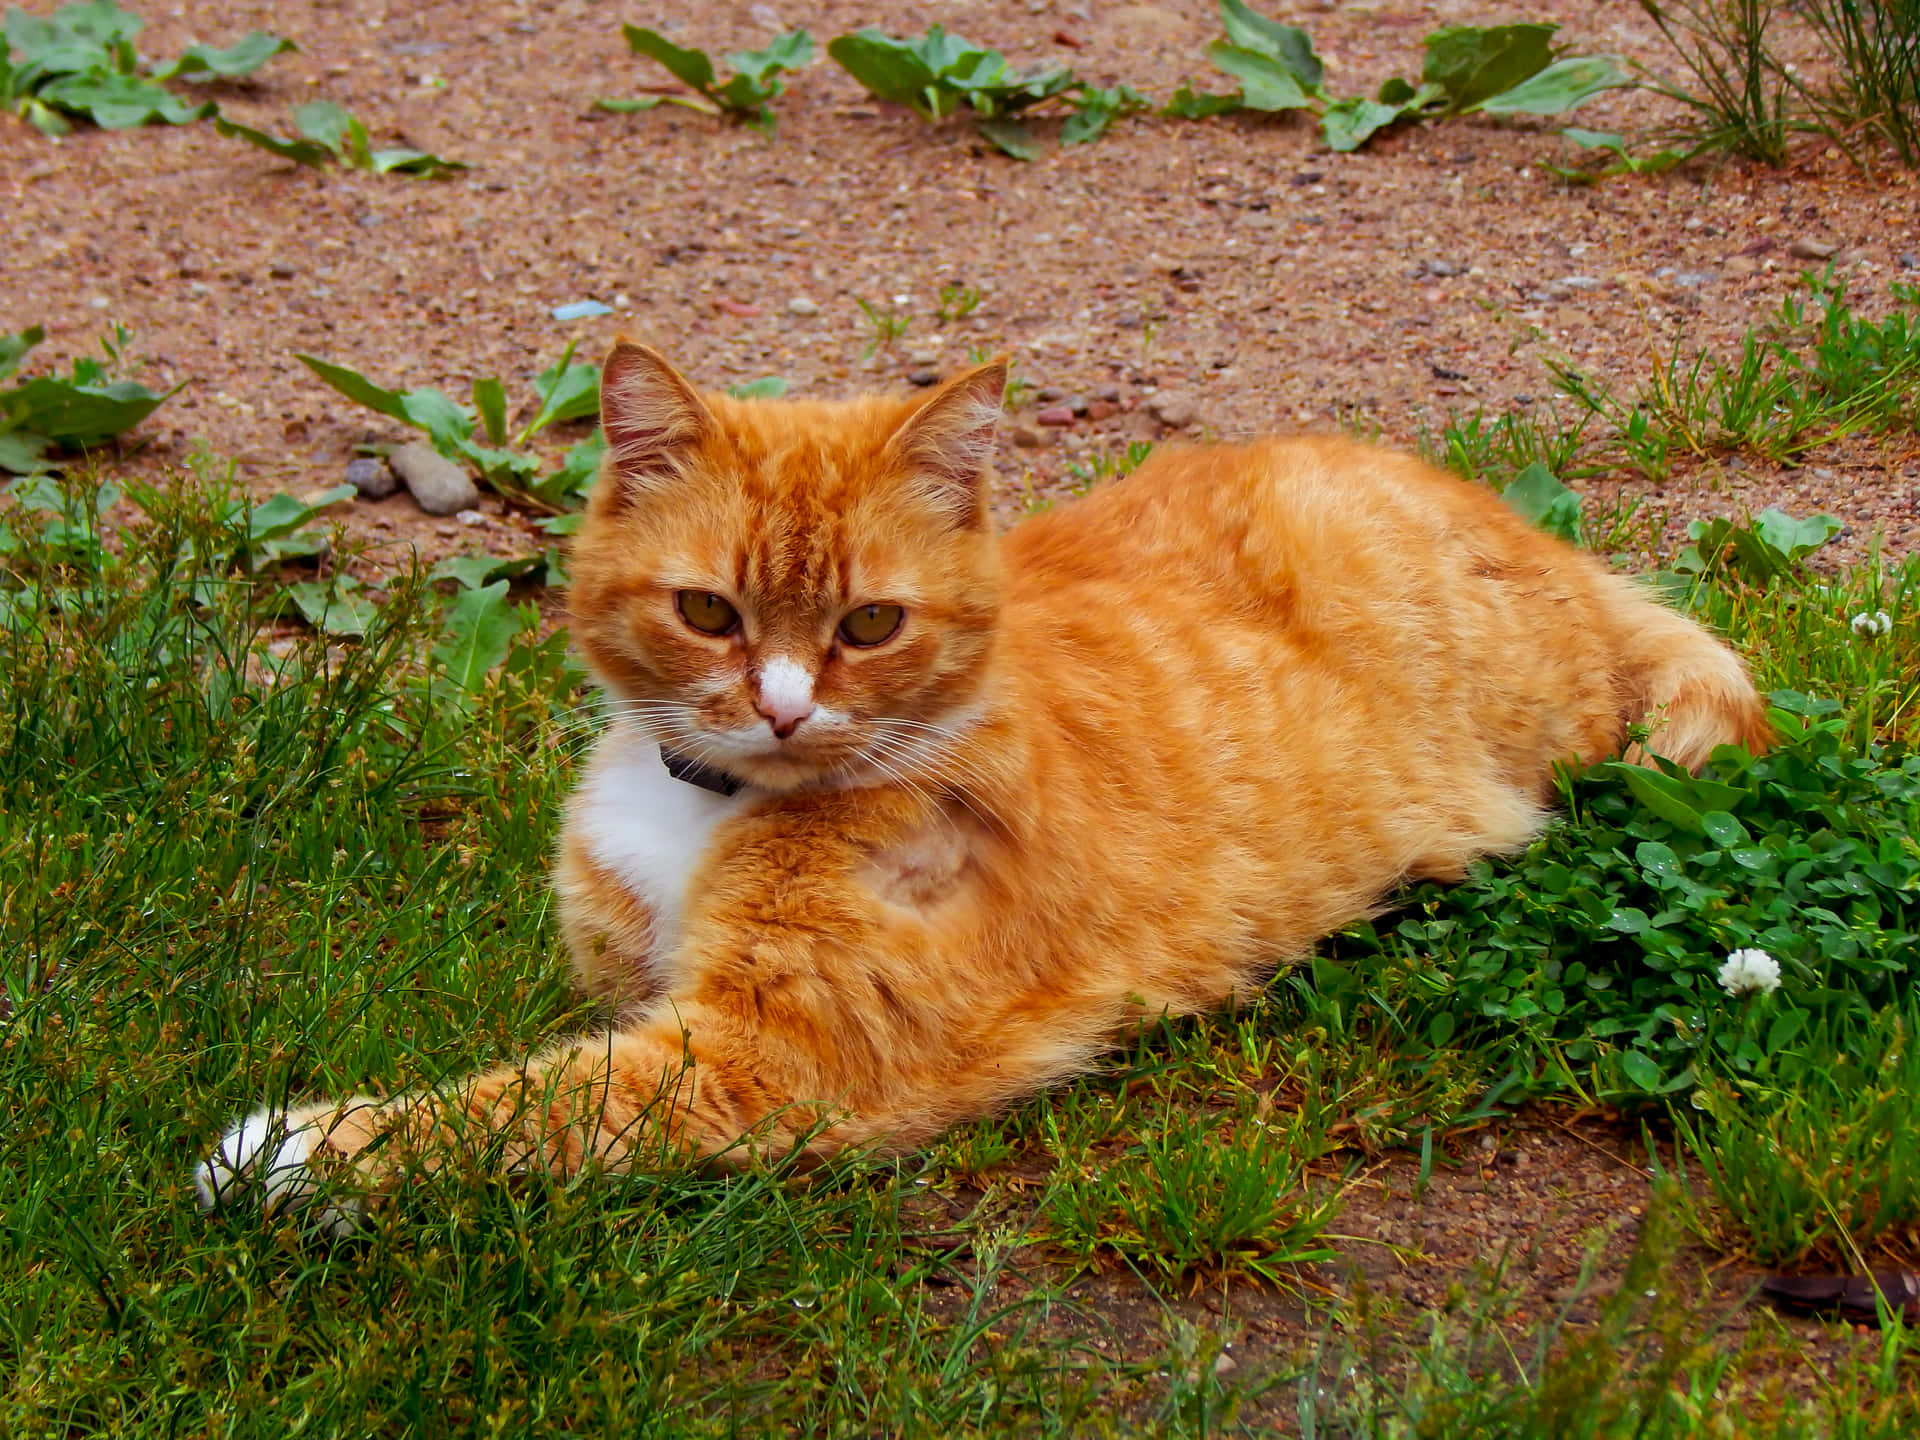 Tosmukke Katte Forundres Over Naturens Skønhed.